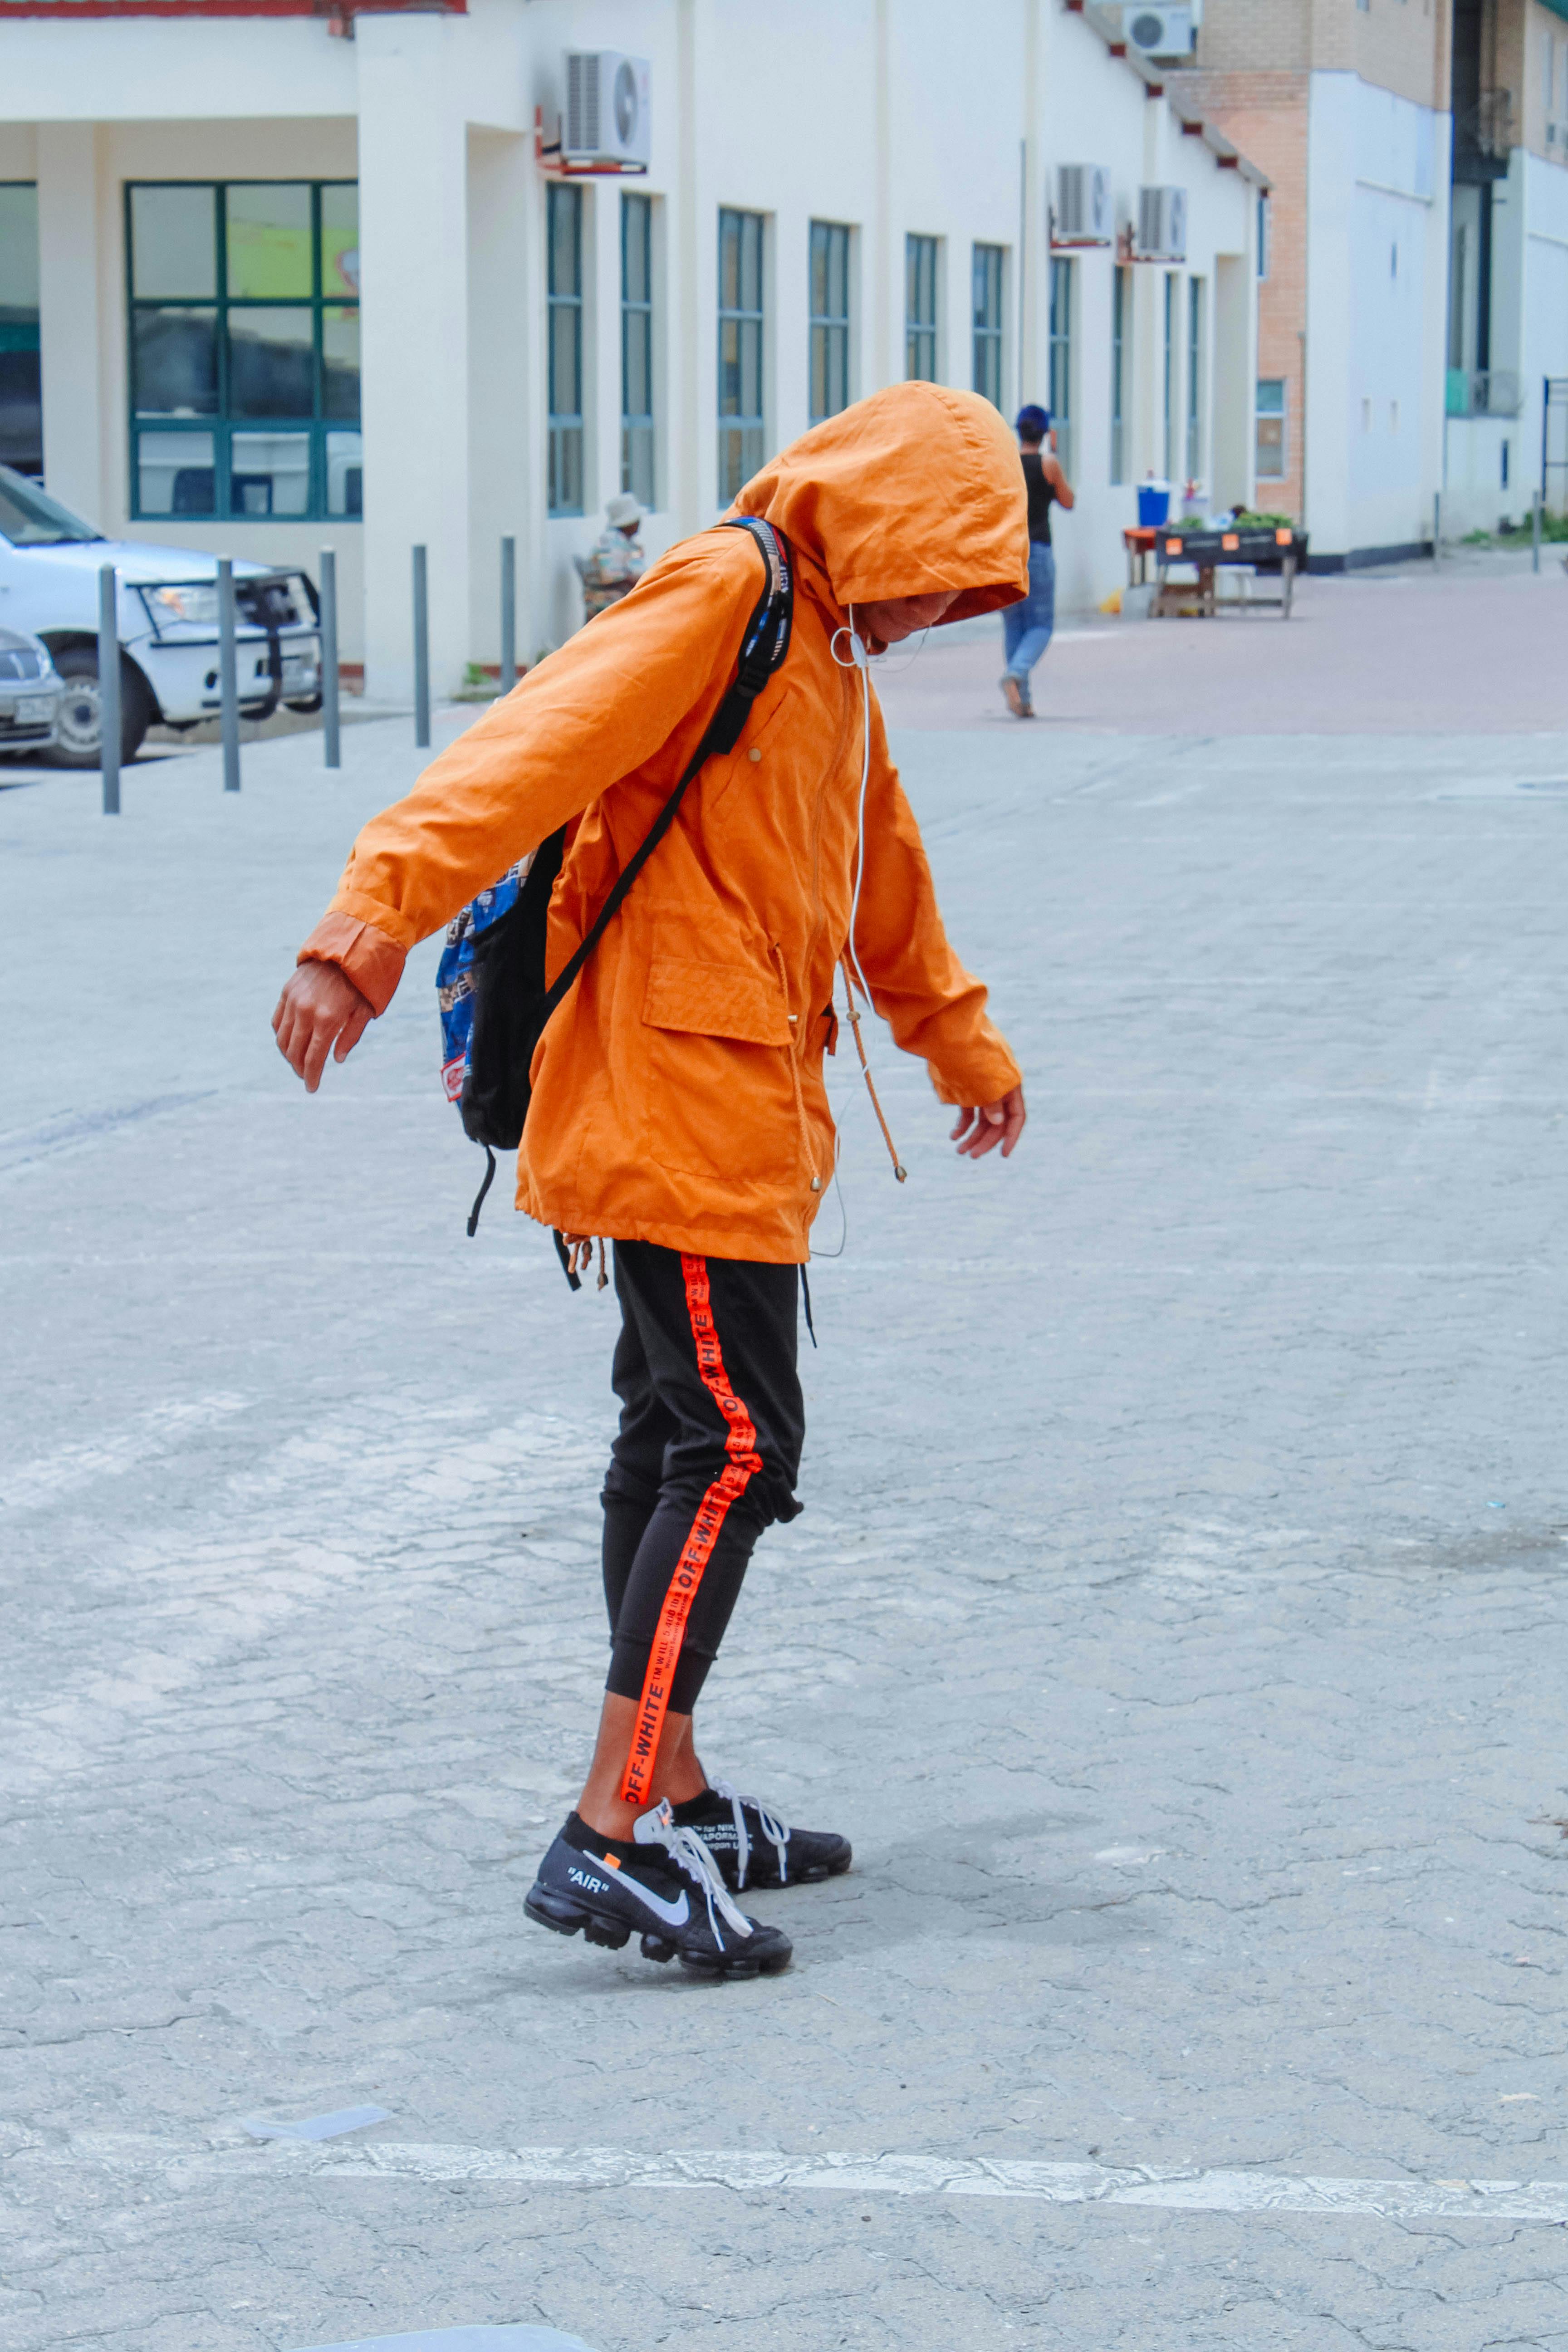 Free stock photo of Man wearing orange jacket